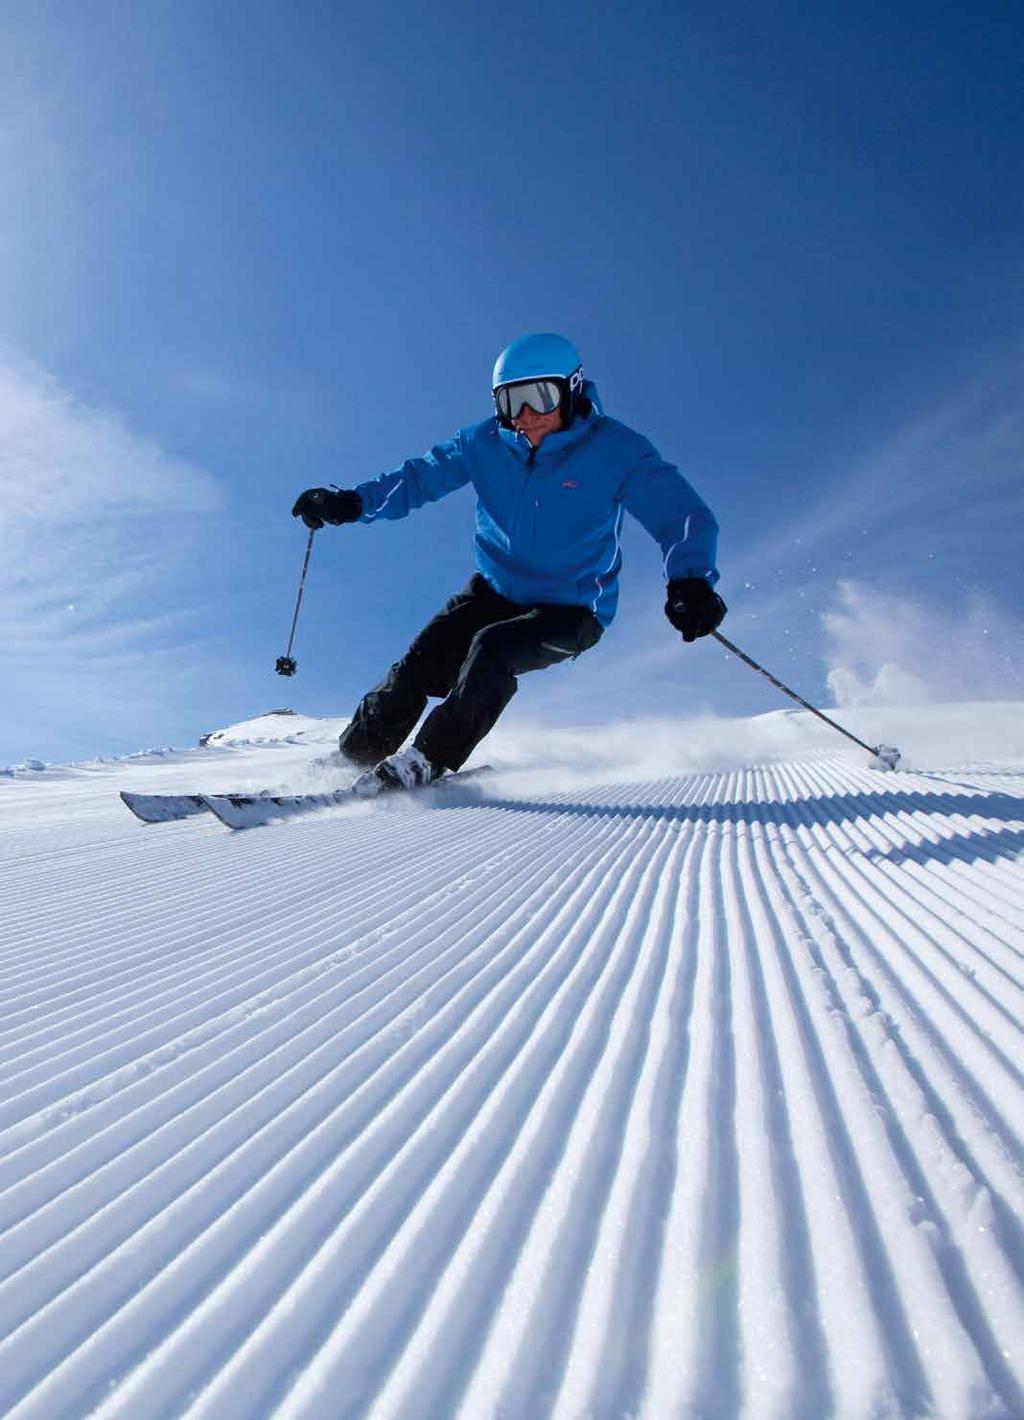 Skigebiete sind nur wenige Fahrminuten entfernt DEN DOLOMITEN SO NAH HOTEL Verleih Gerne verleihen wir die Schneeschuh-Ausrüstung an unsere Gäste Schnee * Spaß DIE VORFREUDE GENIESSEN Gratis Ski- und